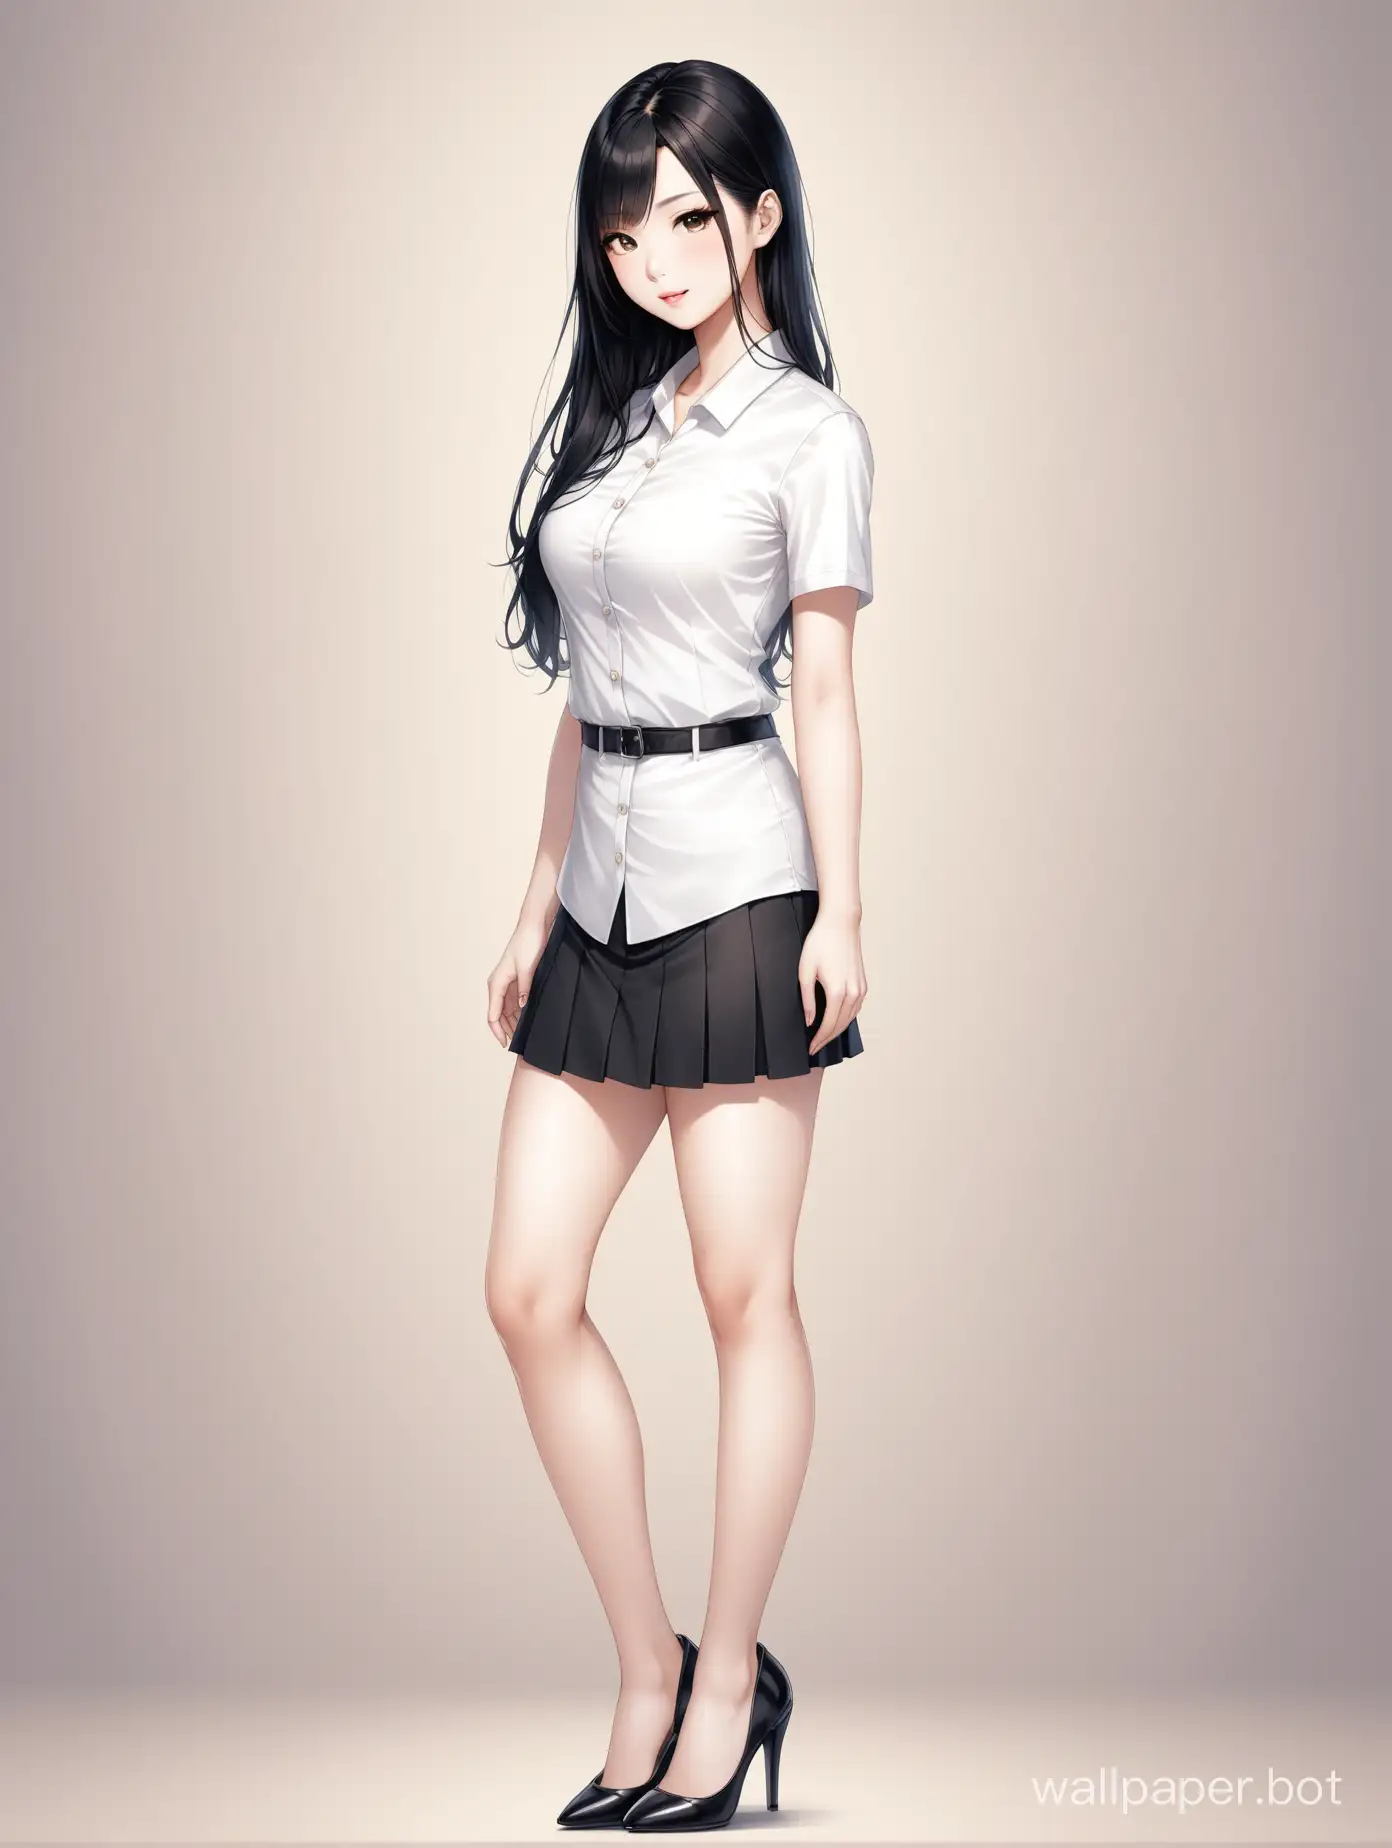 Elegant-Asian-Woman-in-Short-Skirt-and-High-Heels-Full-Body-Portrait